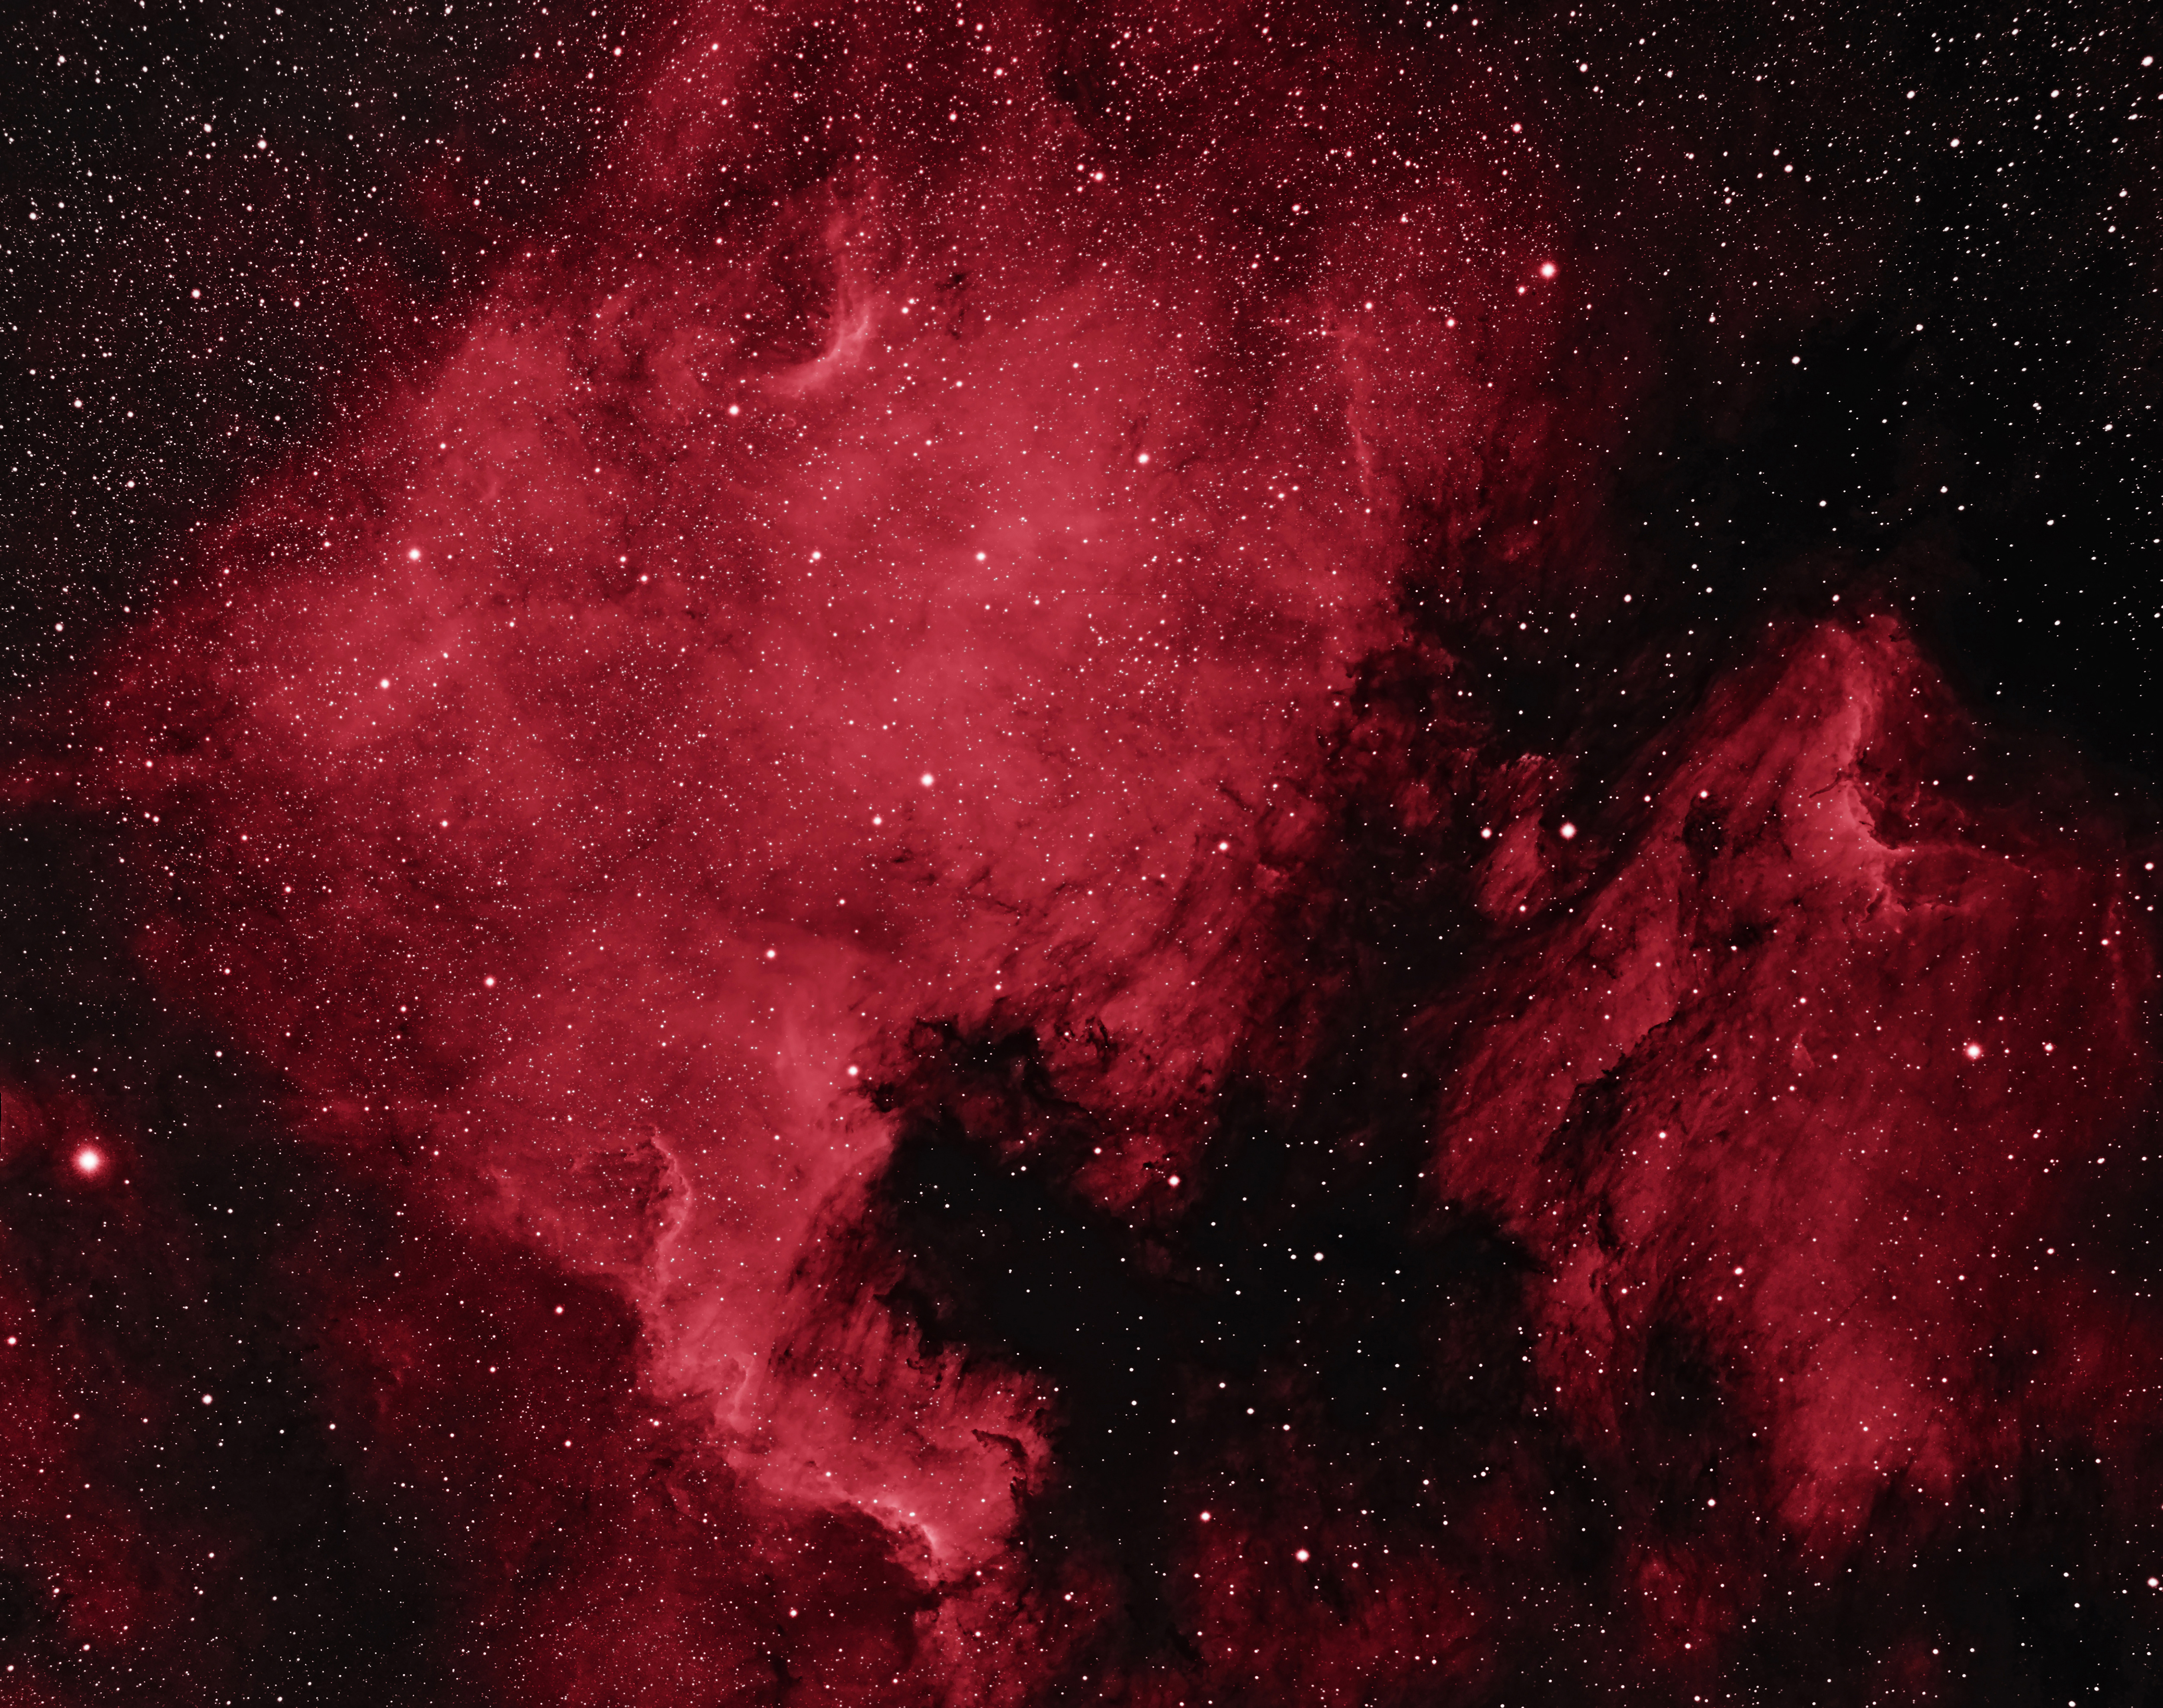 003-North-America-Nebula